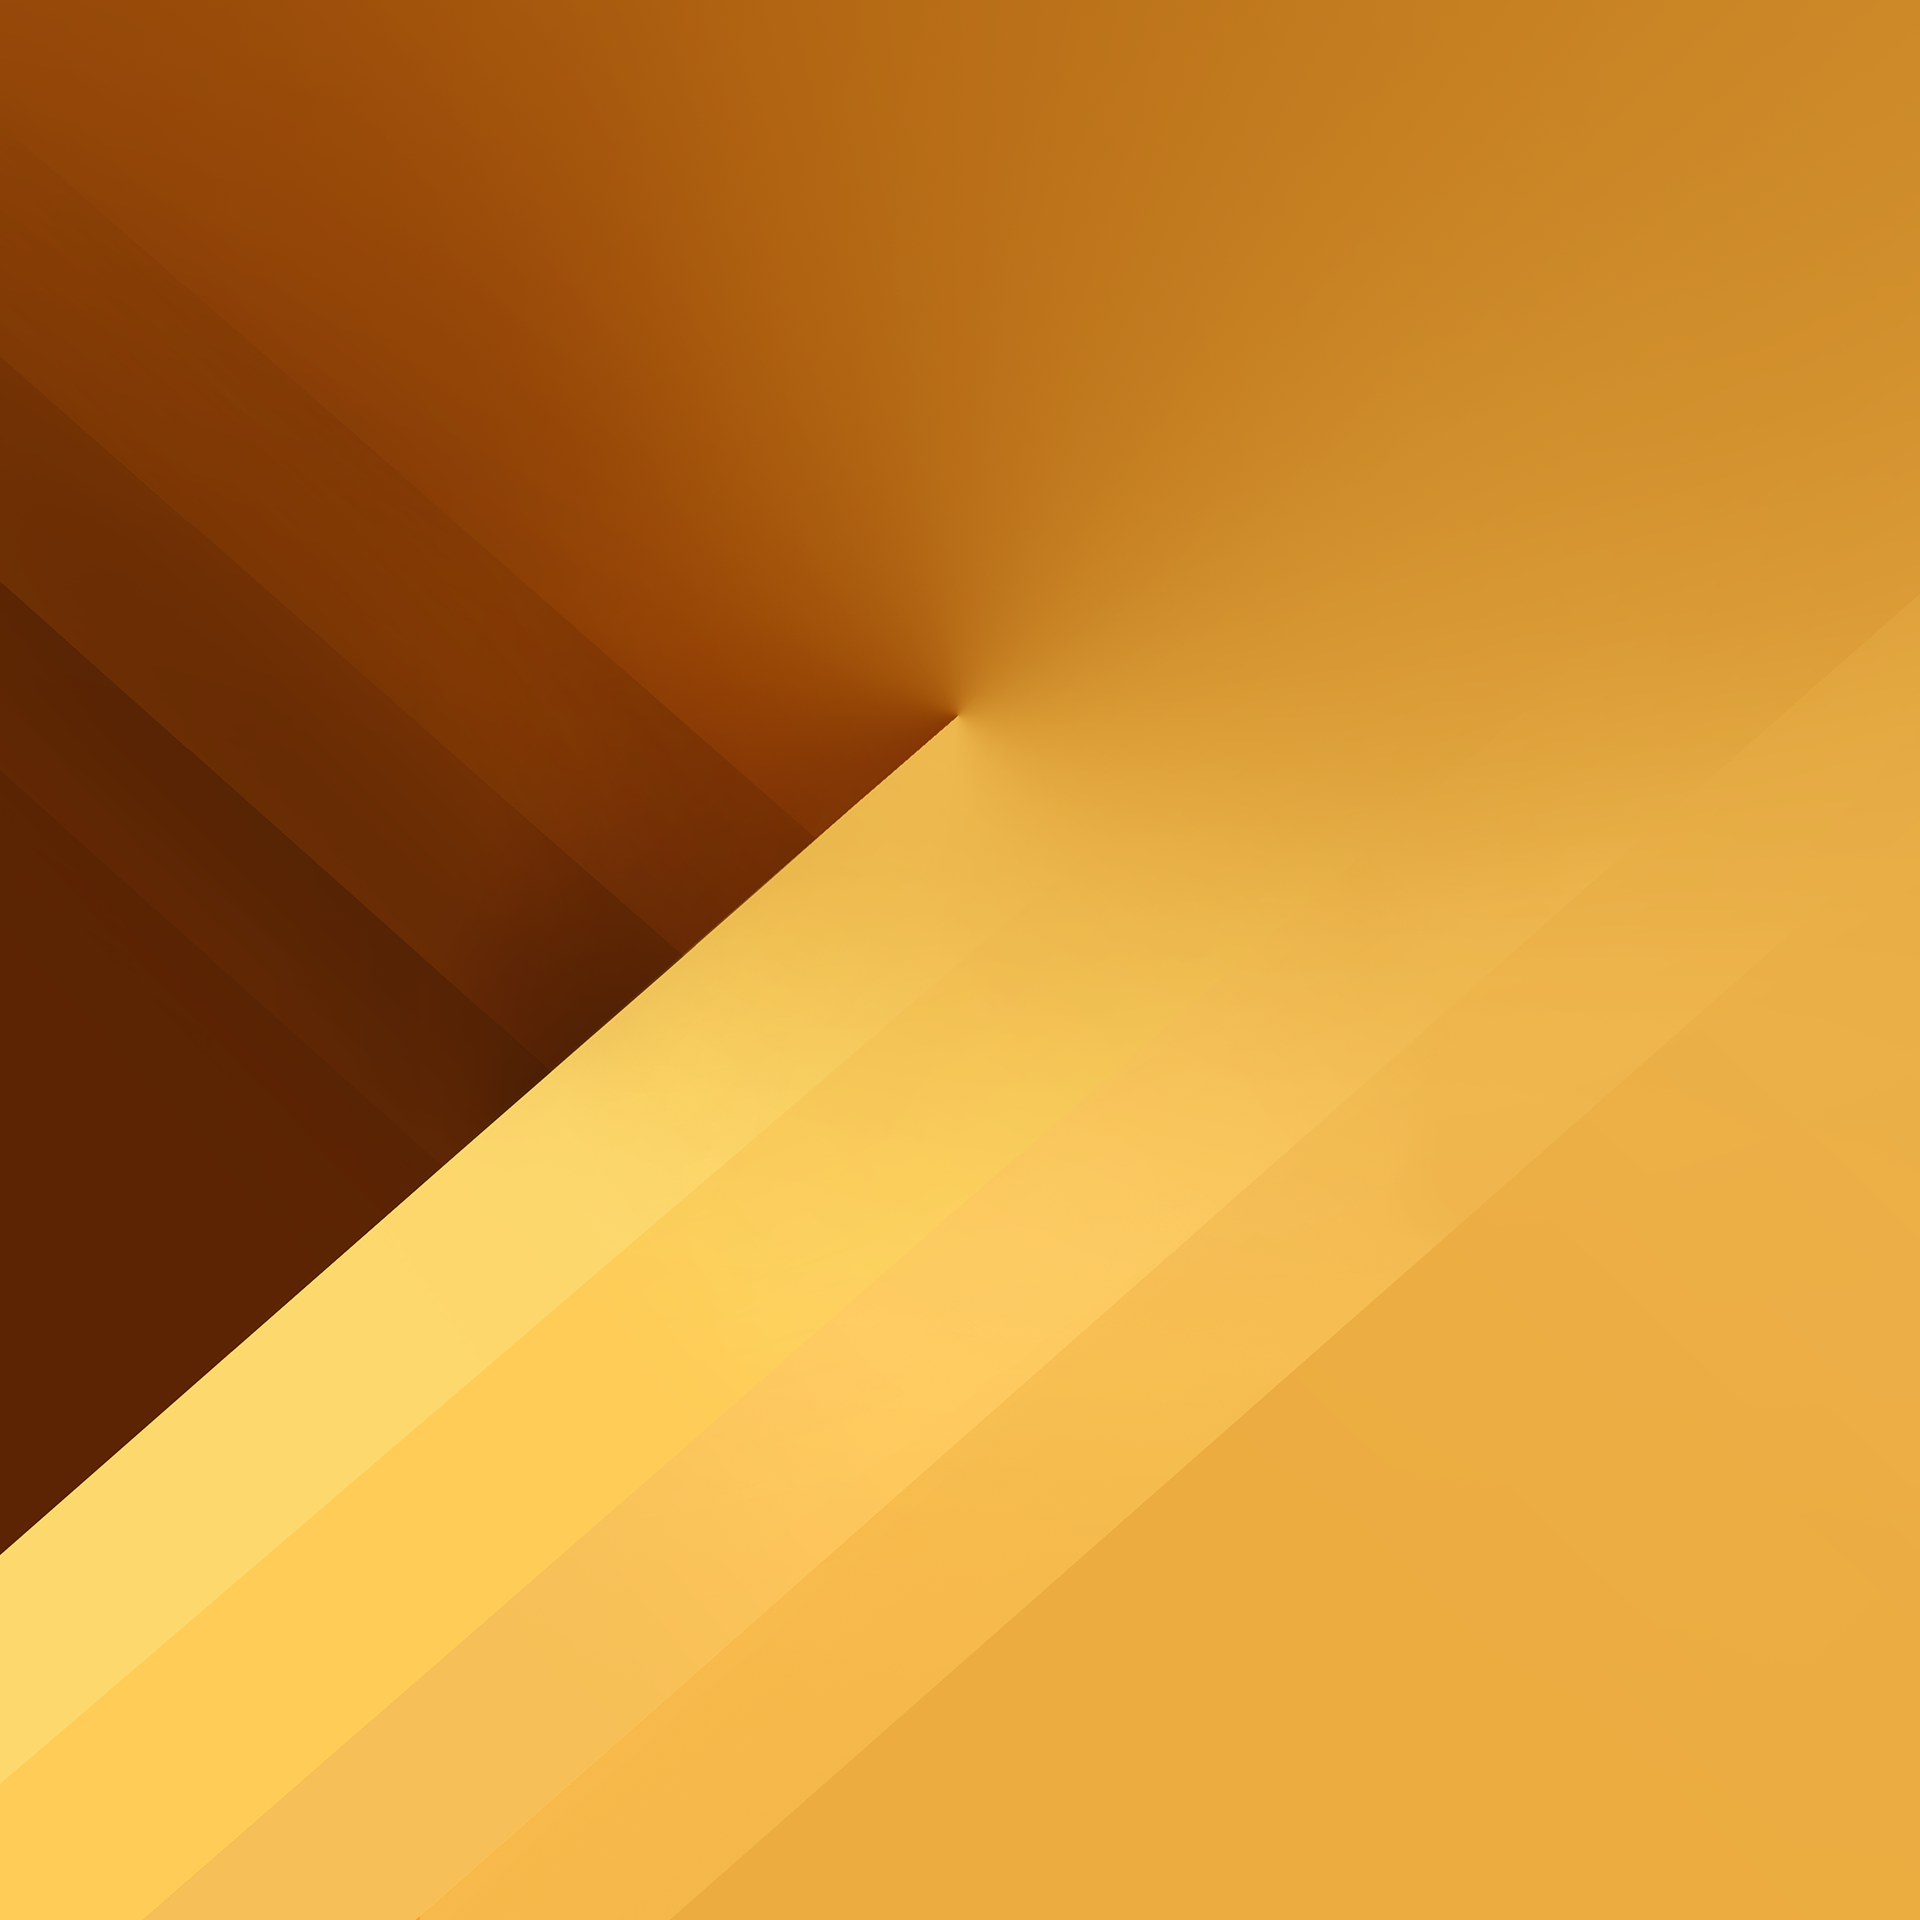 sfondo di samsung galaxy grand prime plus,arancia,giallo,marrone,linea,beige